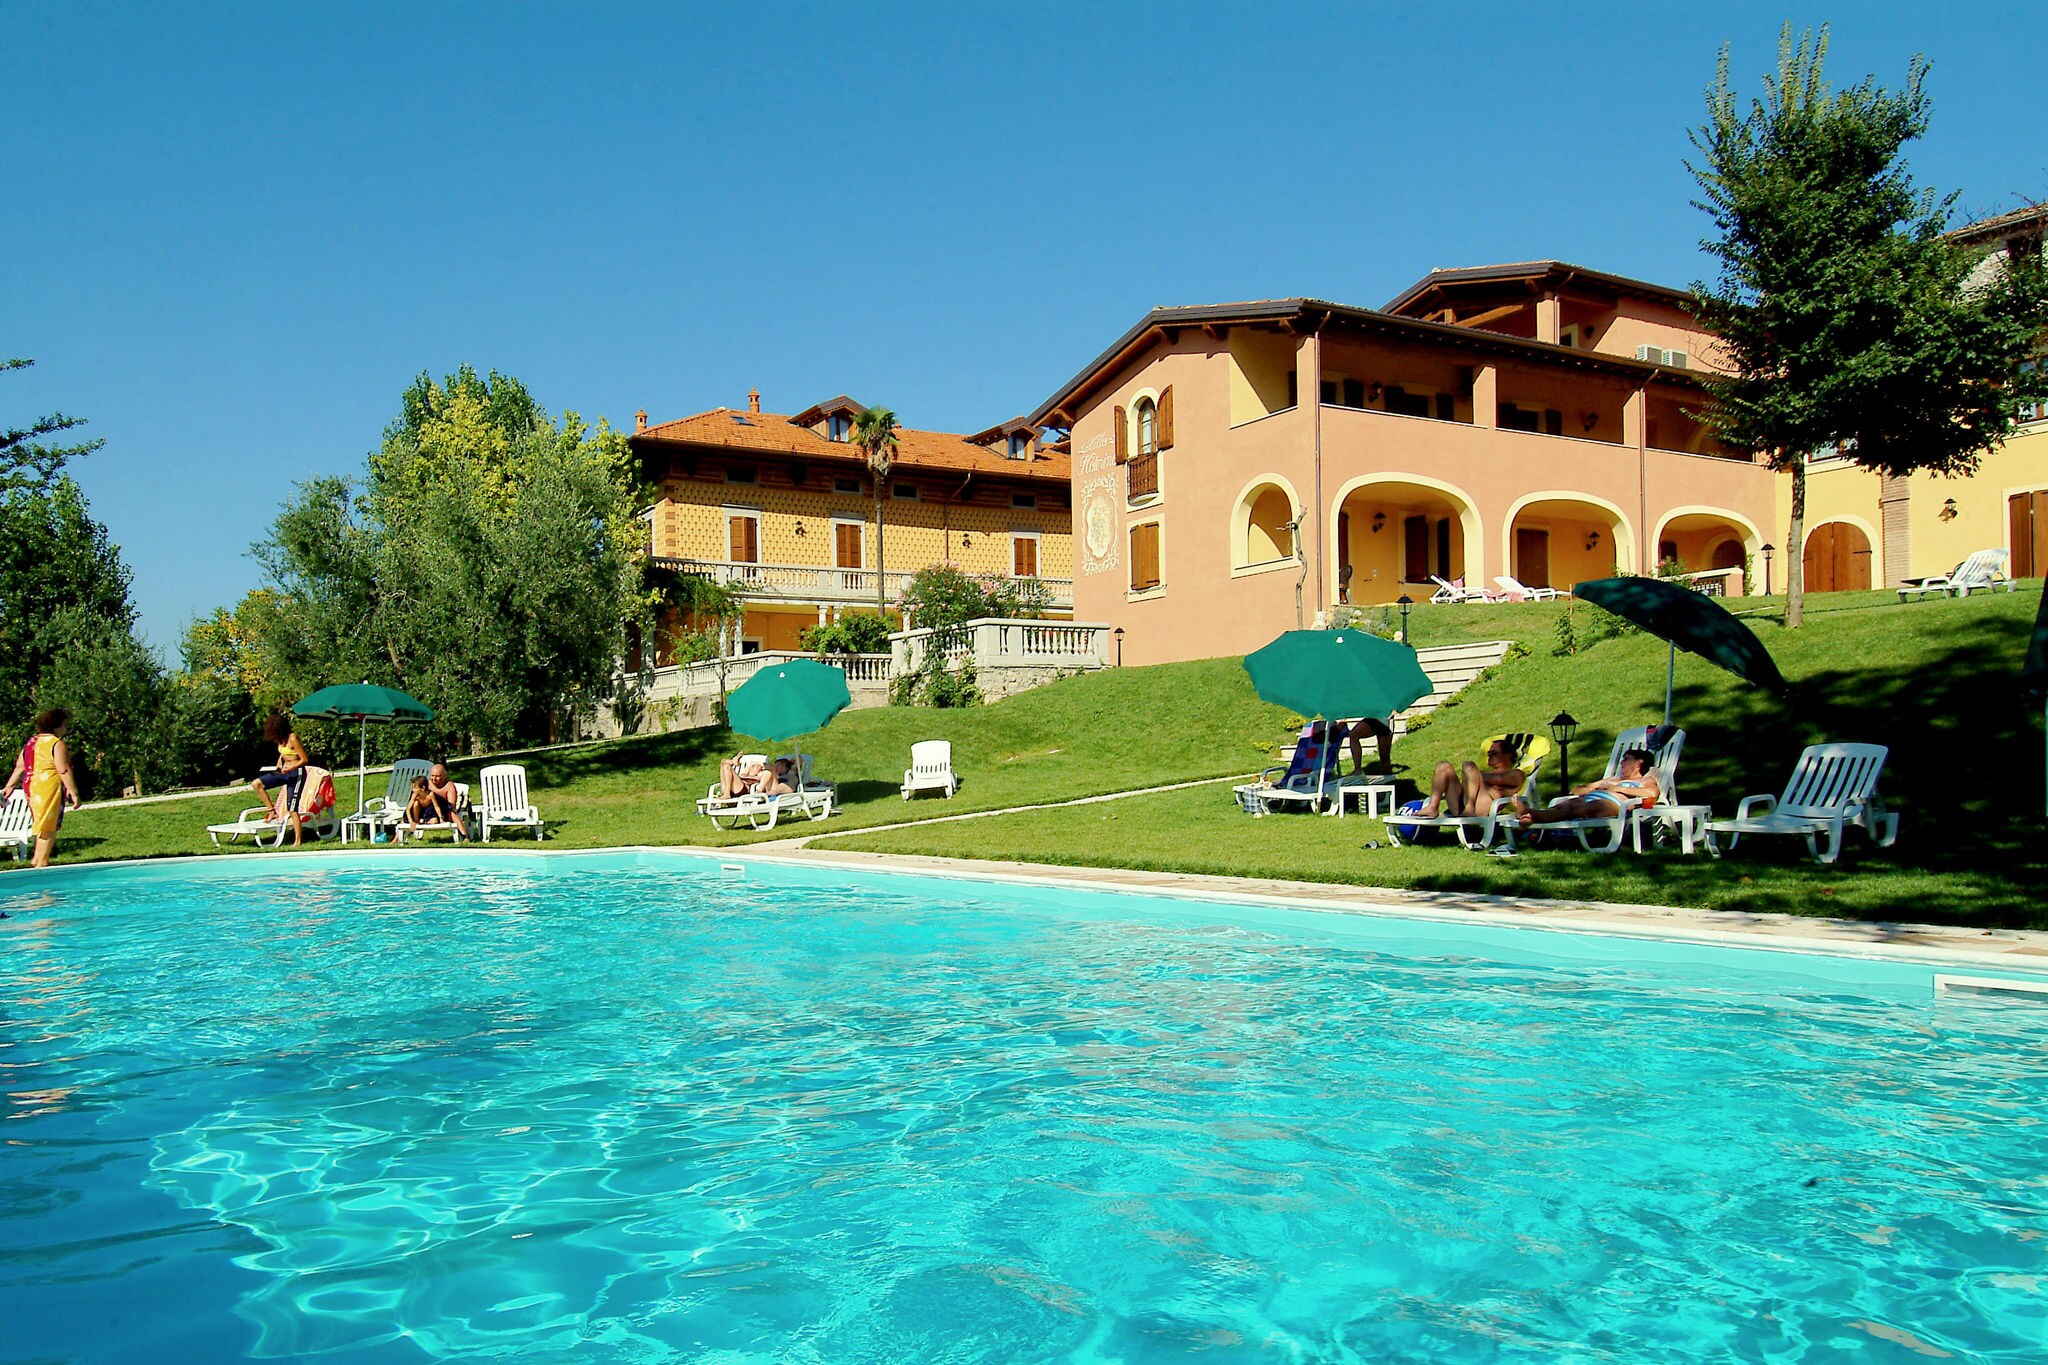 Ferienhaus in Manerba del Garda in der Nähe des Gardasees